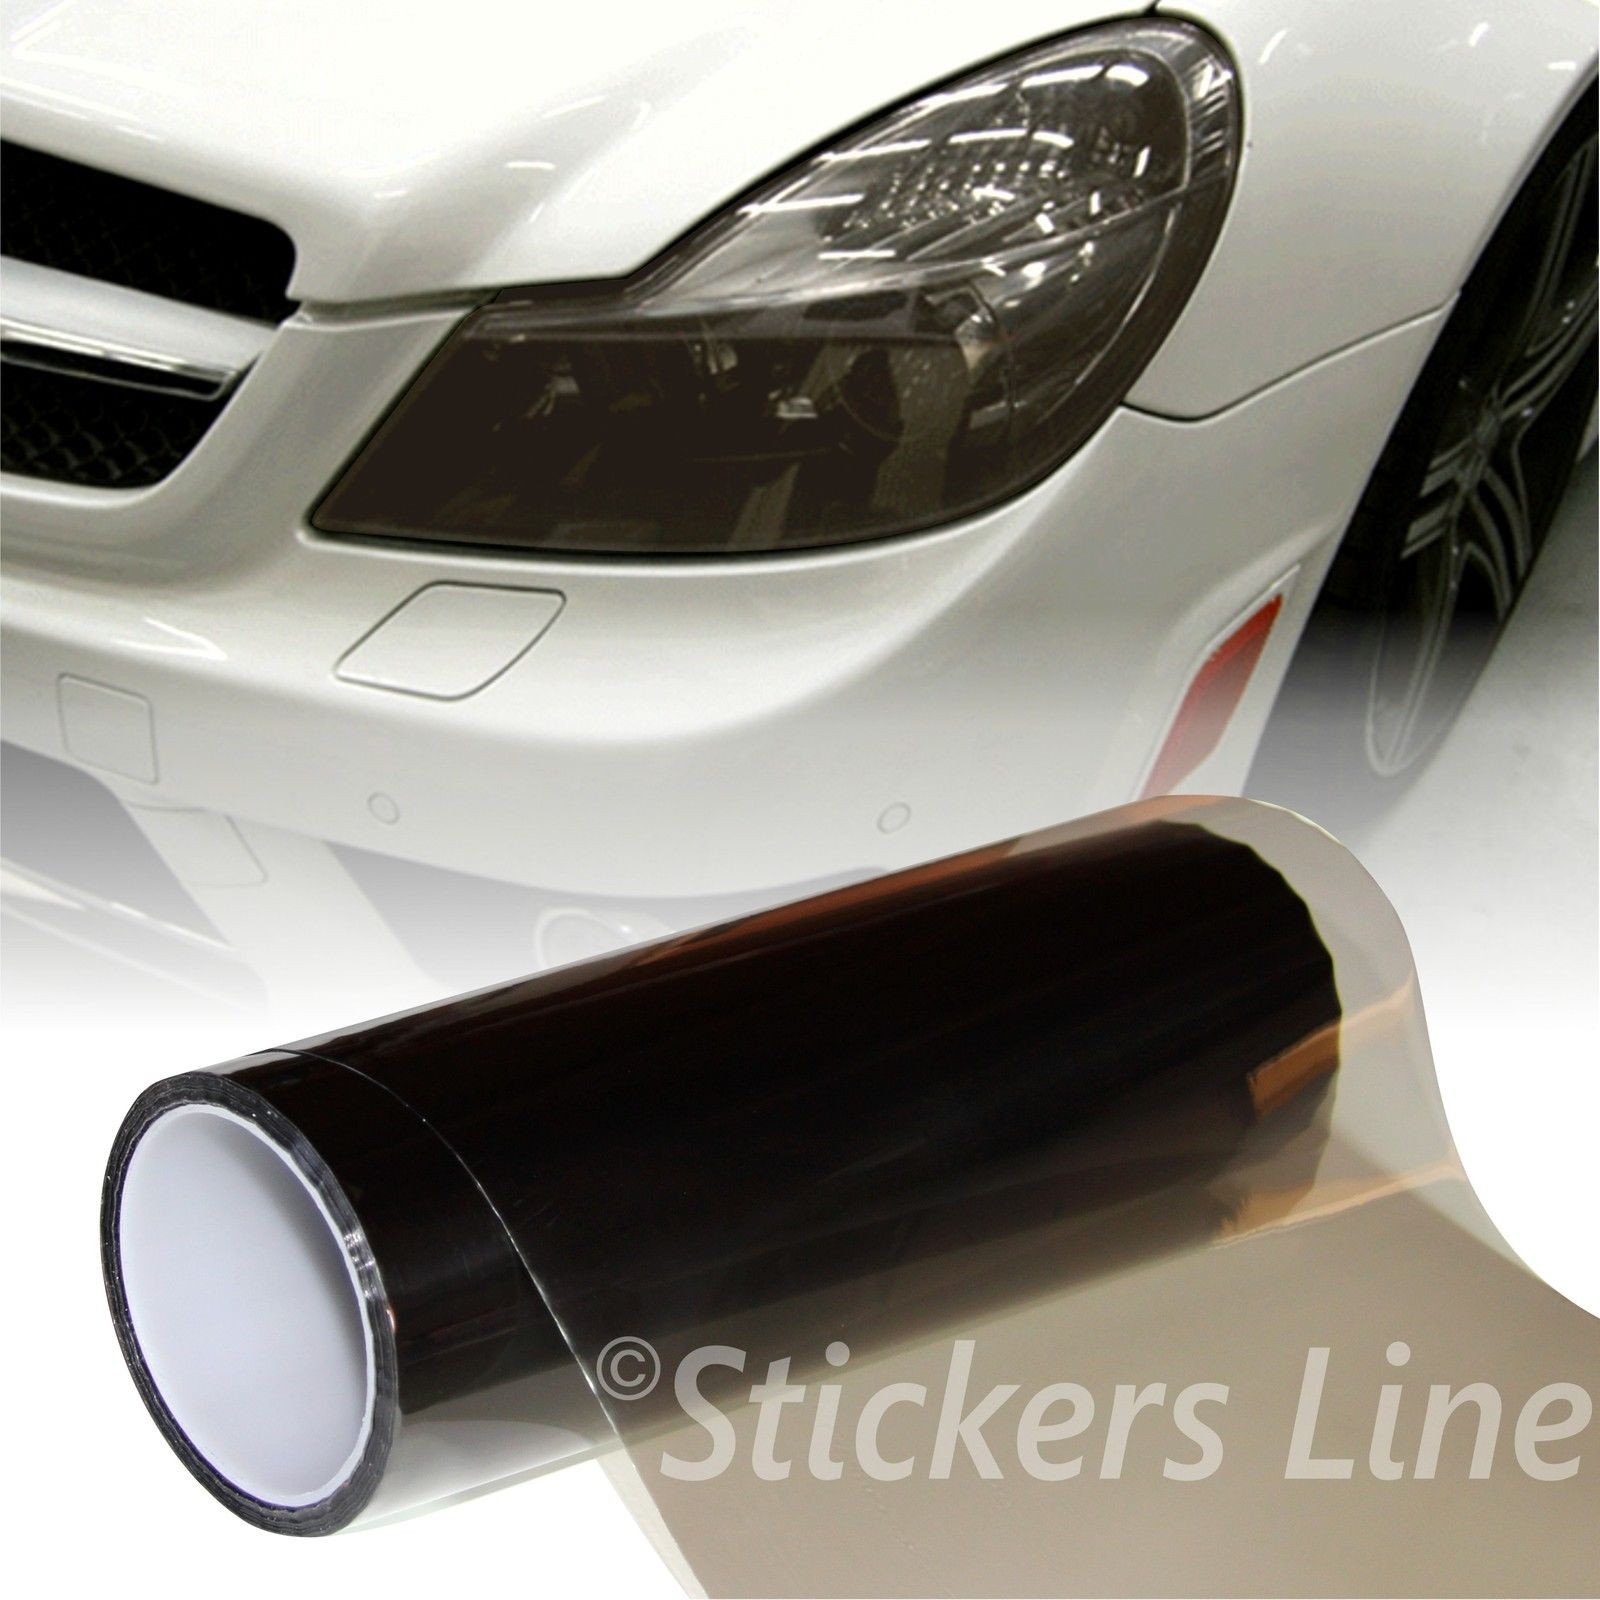 StickersLab Pellicola adesiva colorata per fari auto anteriori e posteriori 12 colori 30cm X 50cm Rosa 